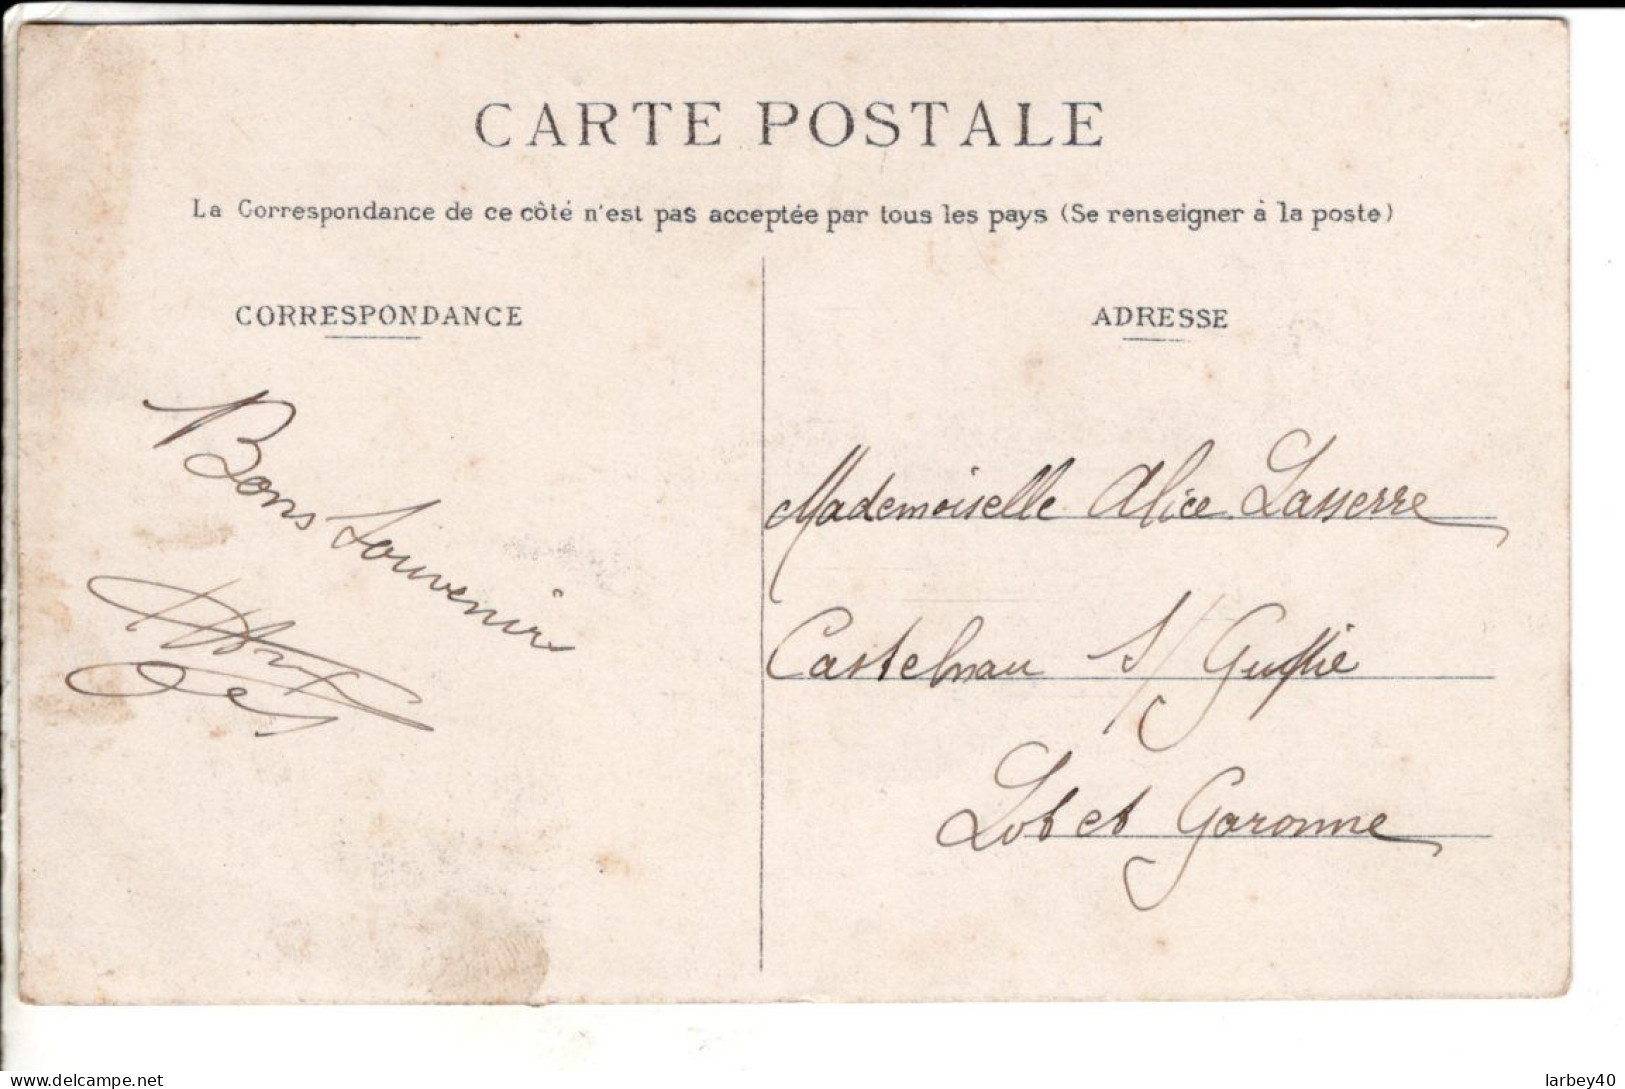 76 GANCOURT SAINT ETIENNE / La Place - L'église - Cartes Postales Ancienne - Autres & Non Classés